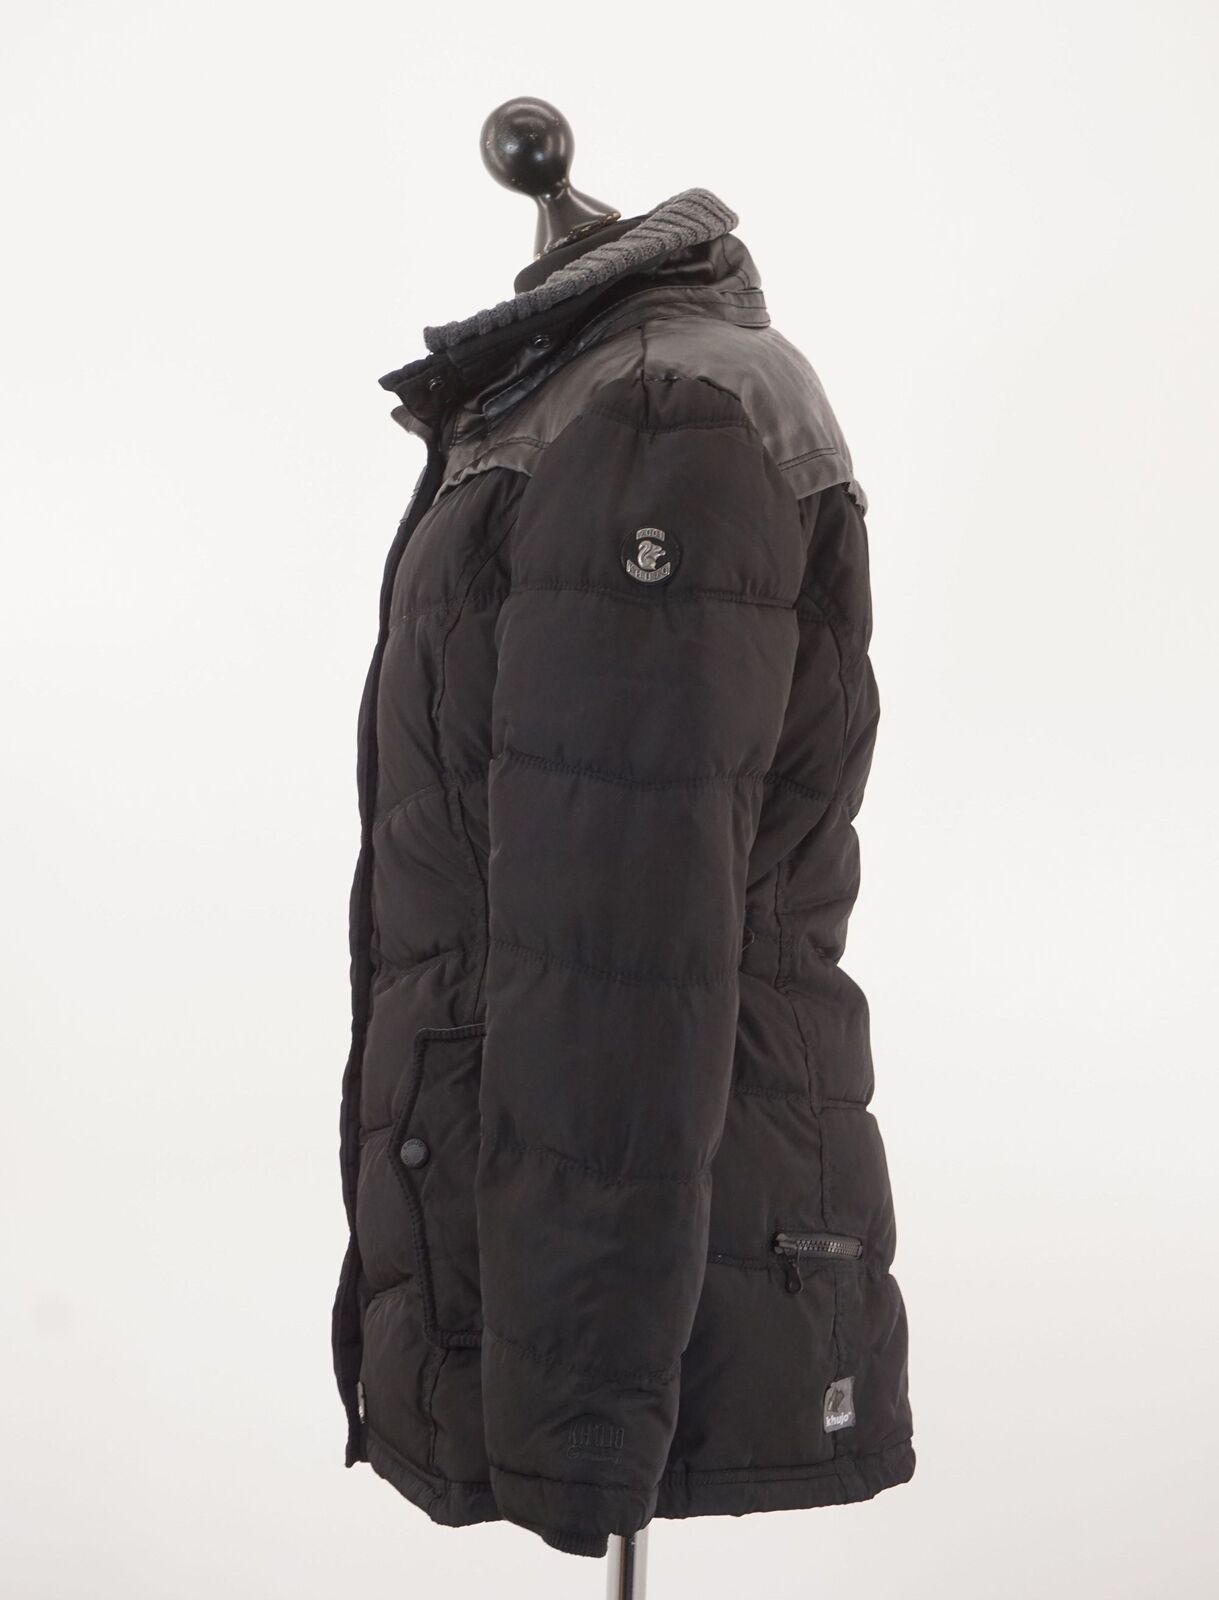 Khujo Damen Winterjacke Jacke M schwarz uni gefüttert Kragen A1321 | eBay